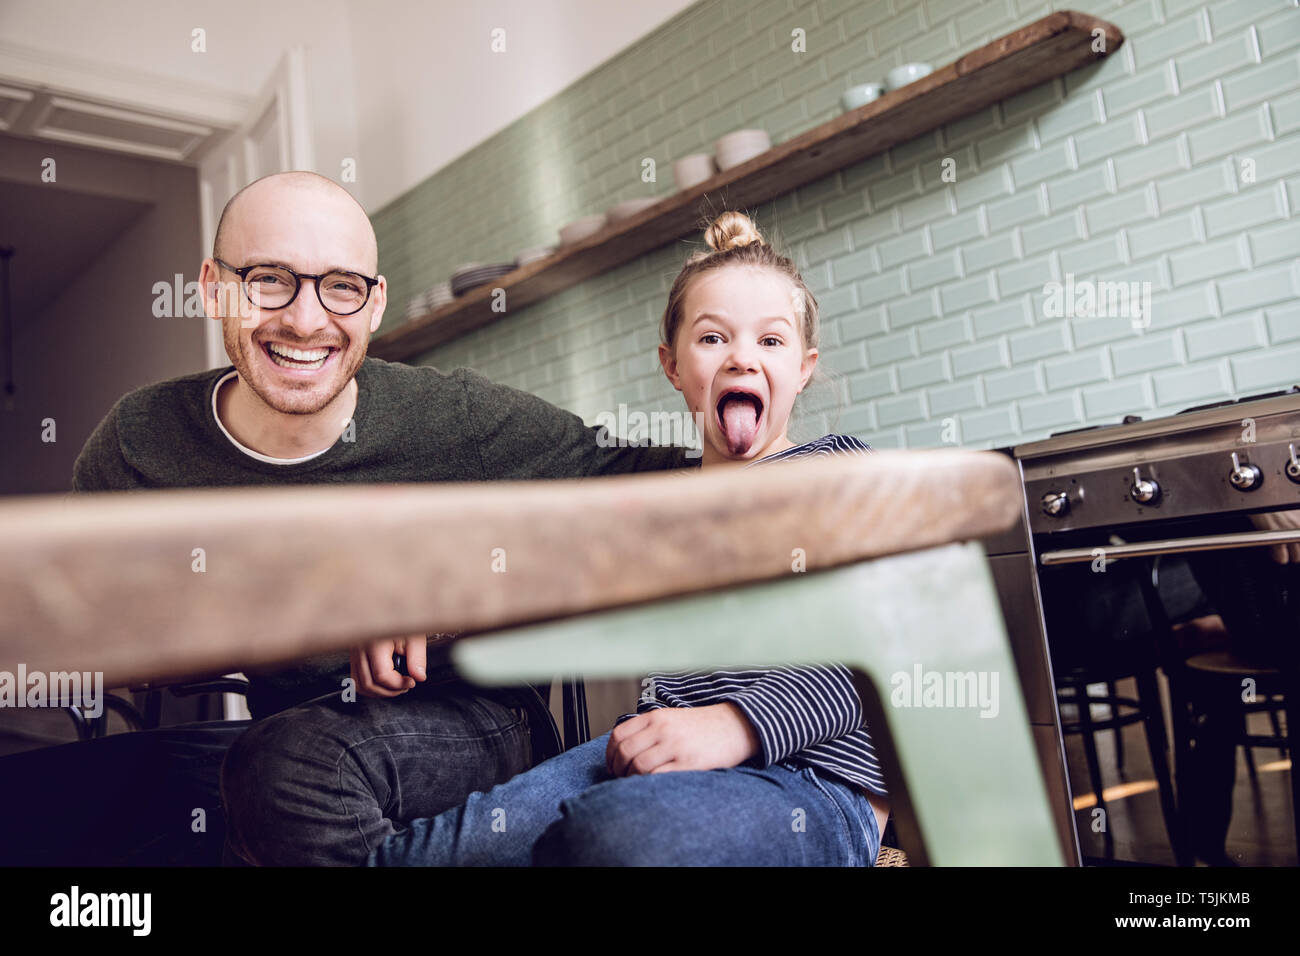 Père et fille assis dans la cuisine, girl pulling funny faces Banque D'Images